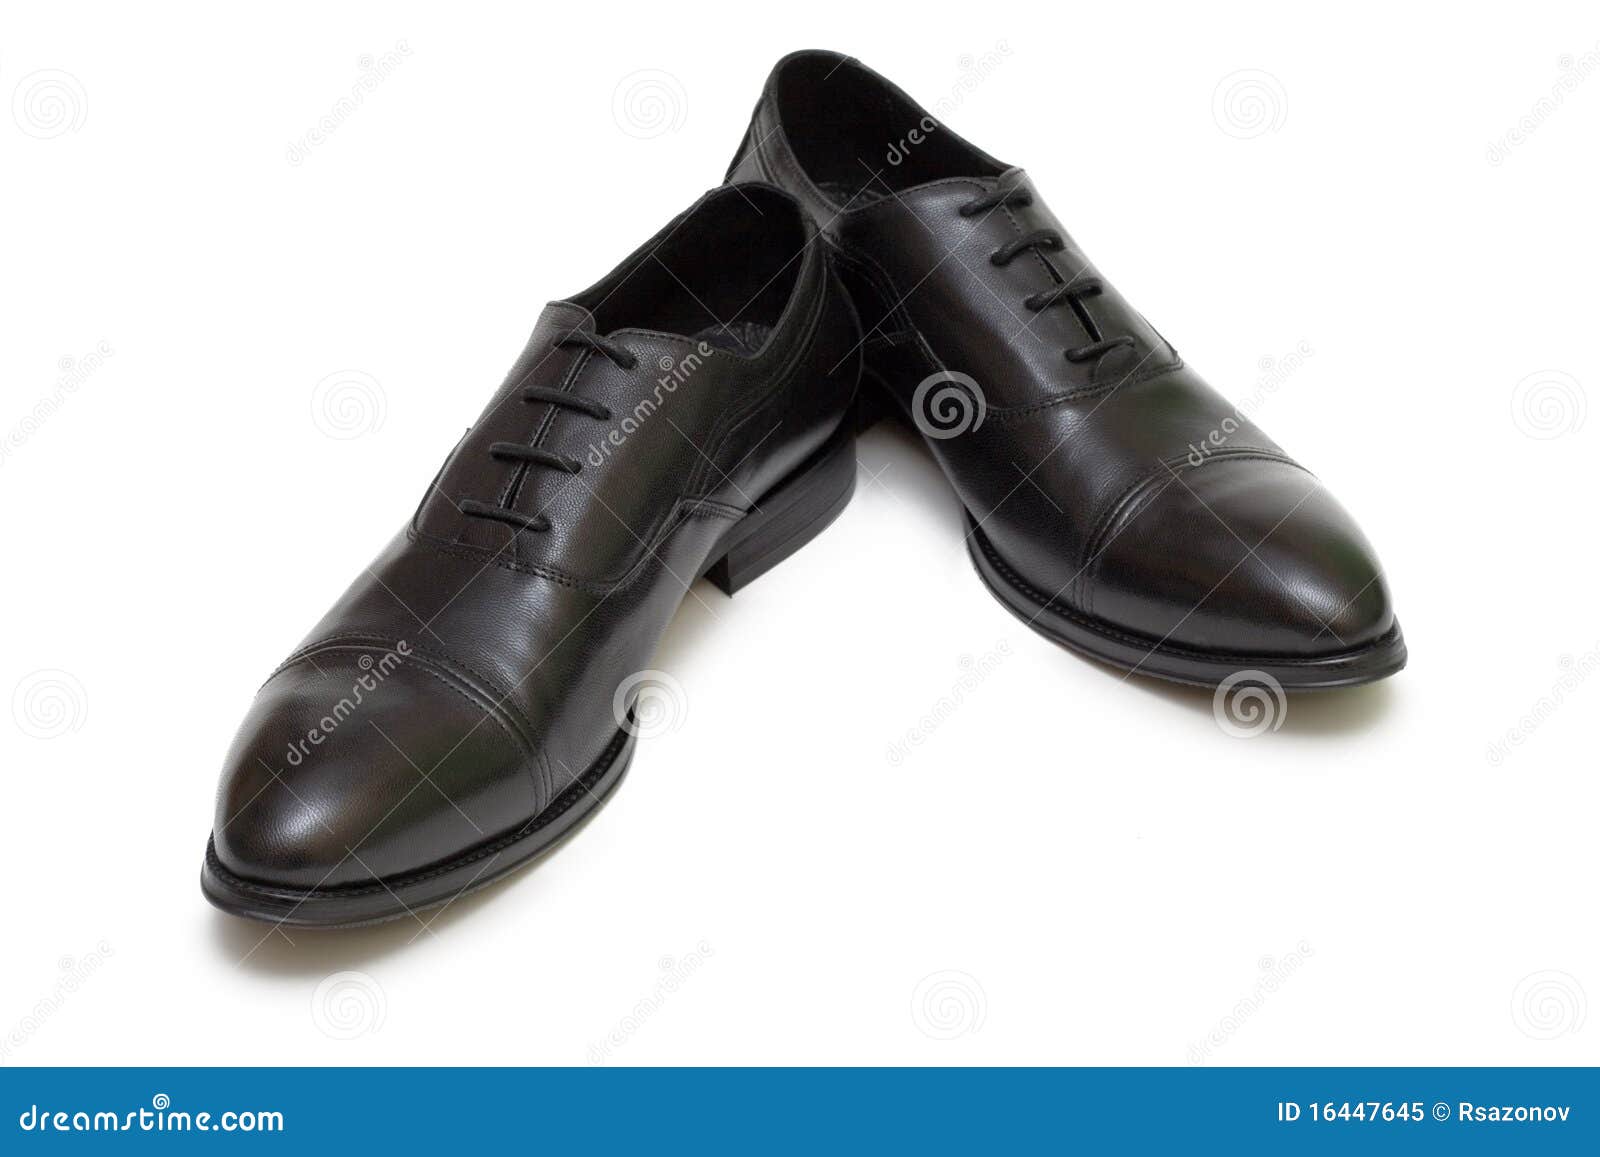 Black Shoes On White Background Royalty Free Stock Photo - Image: 16447645